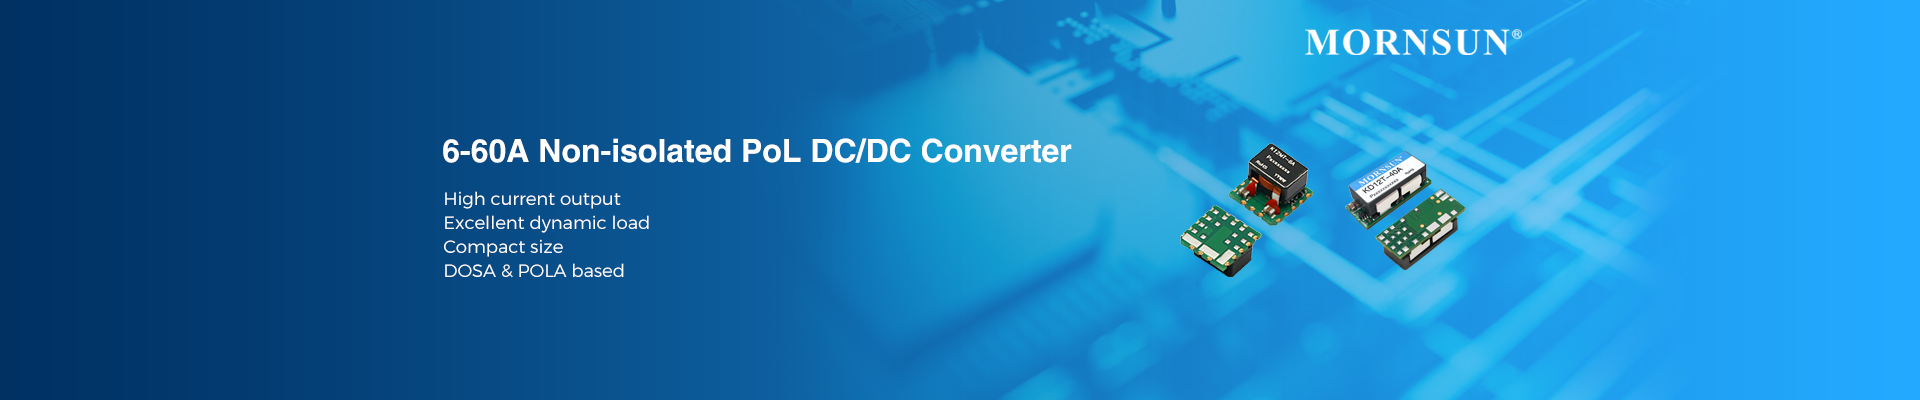 6-60A Non-isolated PoL DC/DC Converter